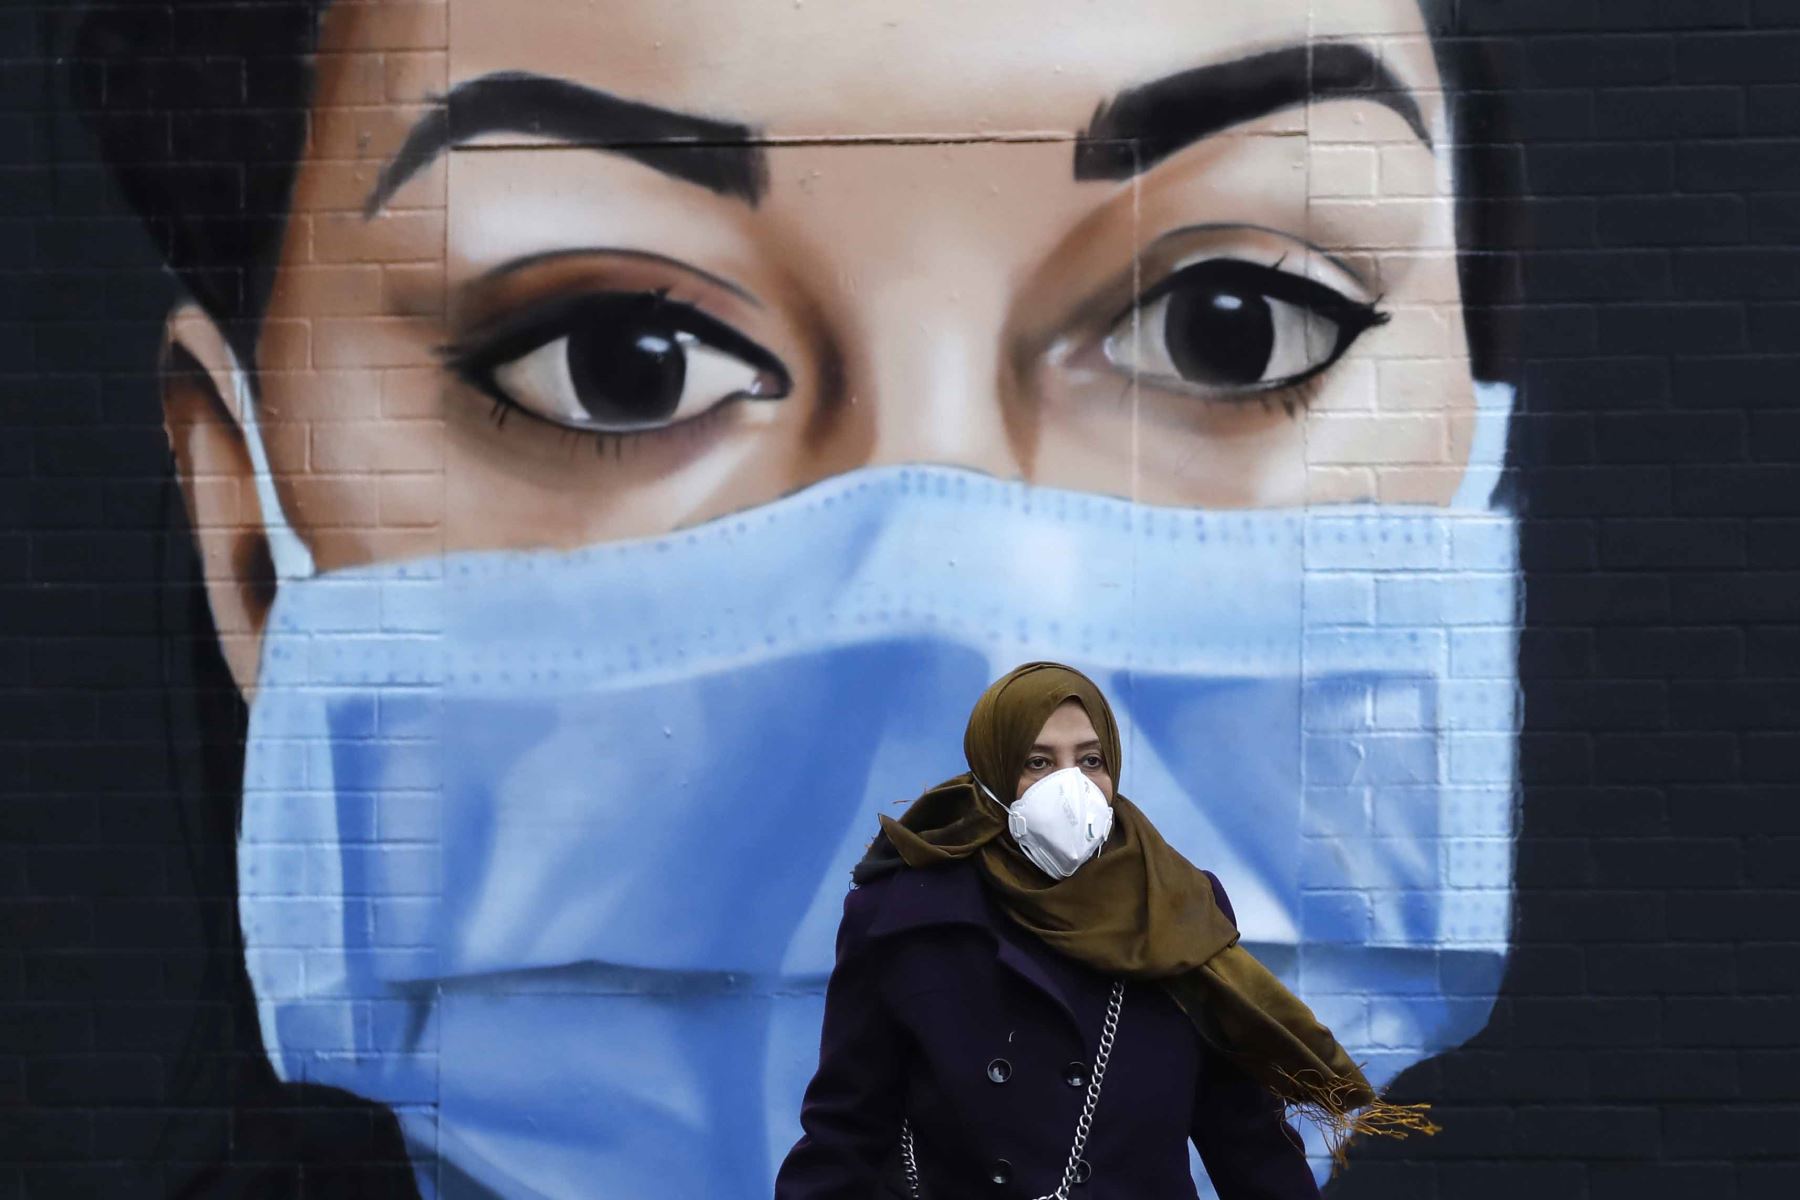 Las personas que usan PPE (equipo de protección personal) como medida de precaución contra COVID-19, pasan frente a un mural de un trabajador del NHS en el centro de Londres mientras Gran Bretaña permanece bajo llave durante la crisis del coronavirus. Foto: AFP